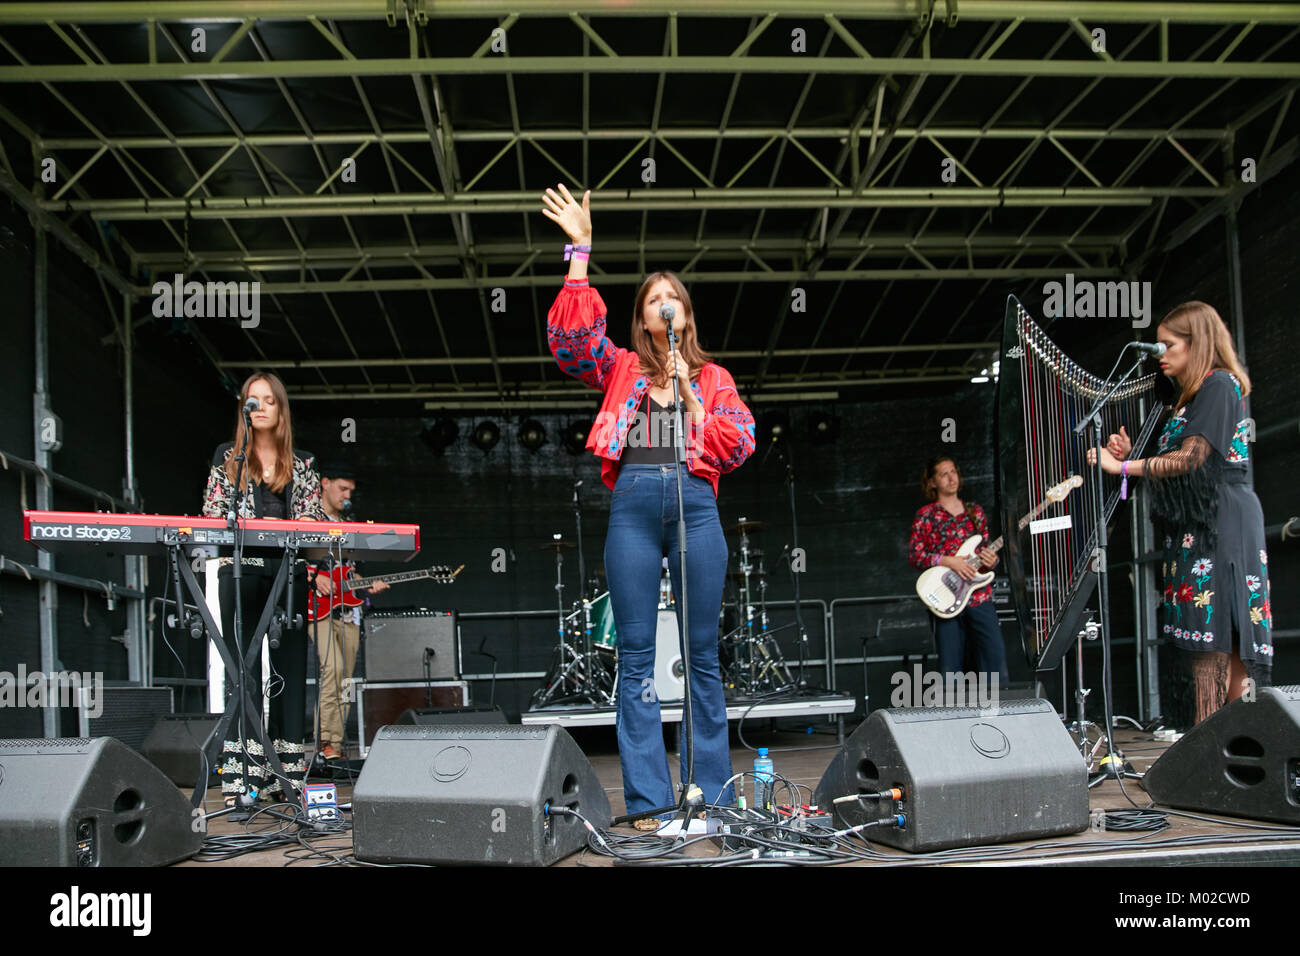 Le groupe britannique Paradisia effectue un concert live au cours de la fête de la musique norvégienne Piknik i Parken à Oslo. Chanteuse Sophie-Rose ici est vu sur scène avec Anna sur harpe et Kristy sur clavier. La Norvège, 22/06 2017. Banque D'Images